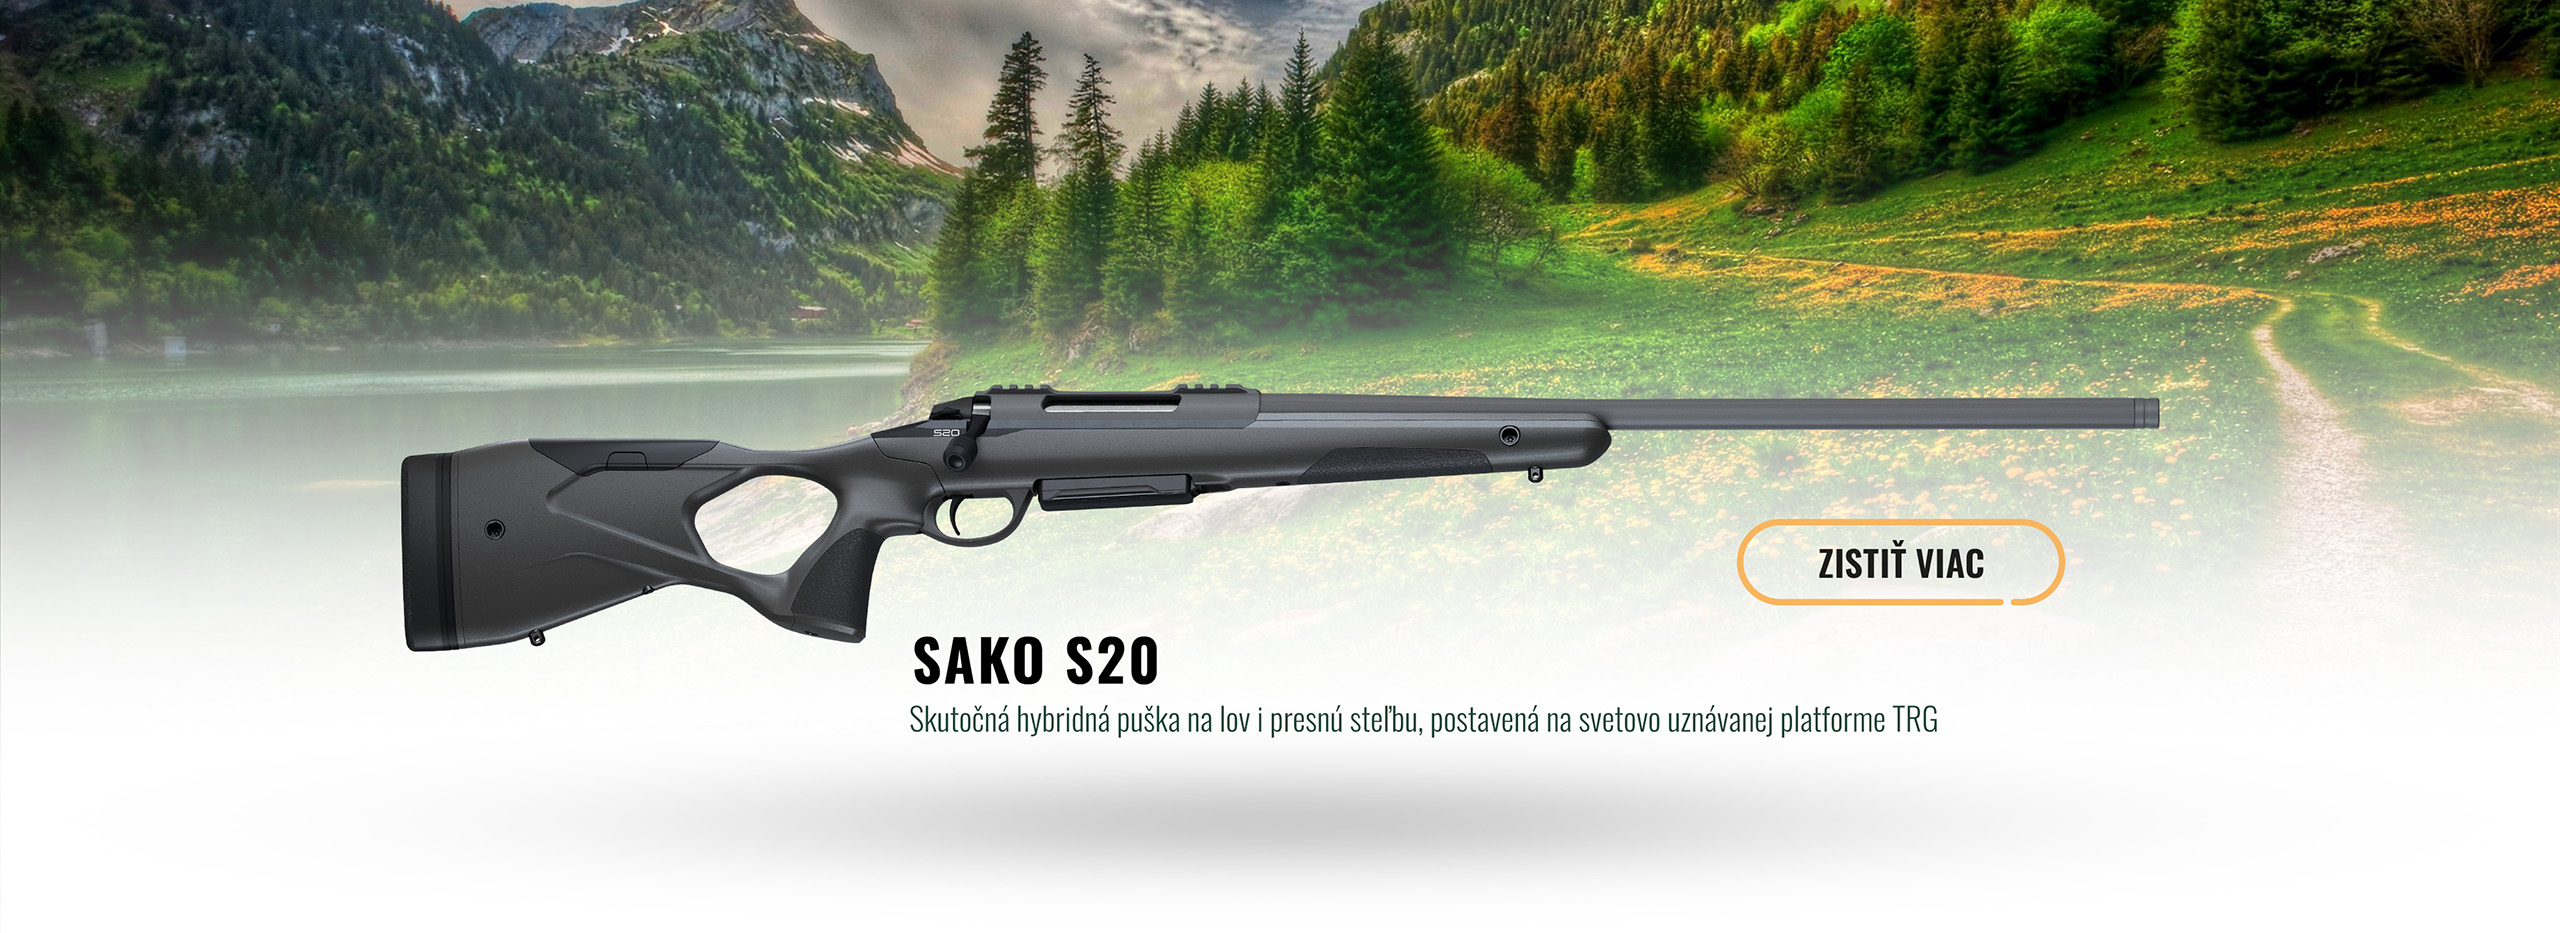 SAKO S20 - Prvá pravá hybridná puška